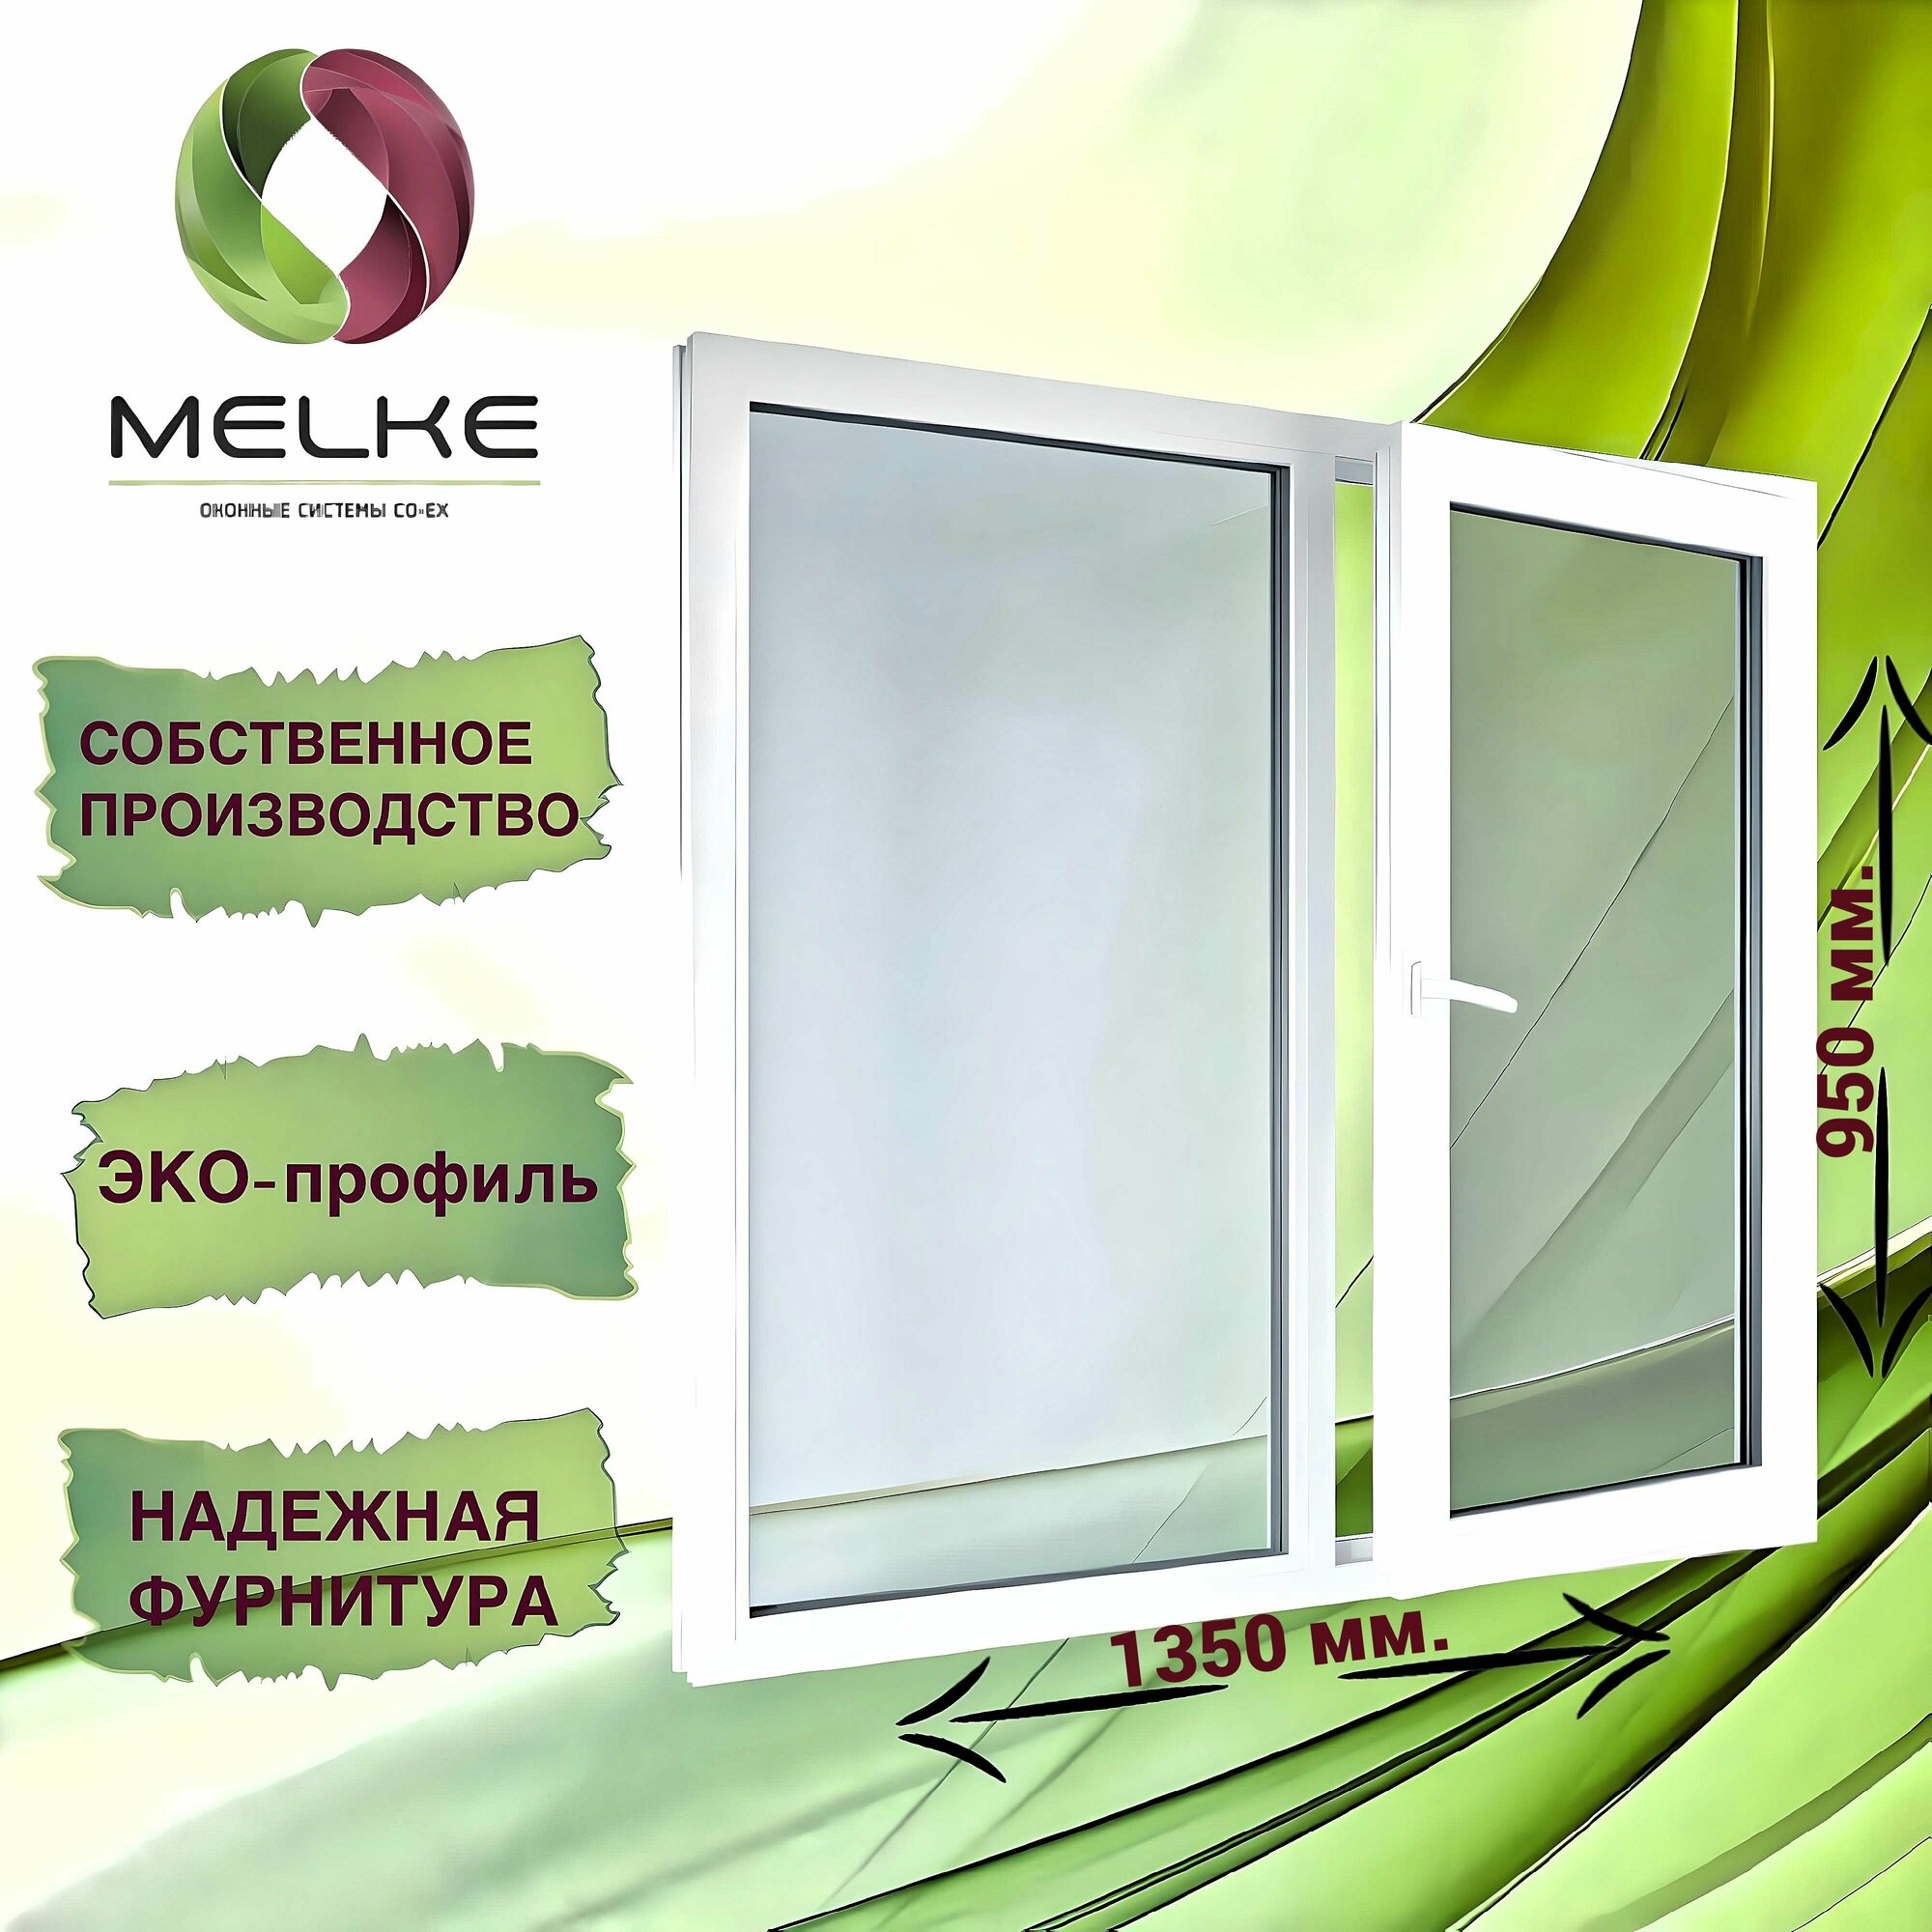 Окно 950 x 1350 мм, профиль Melke 60 (Фурнитура FUTURUSS), двухстворчатое, с поворотно-откидной правой и глухой левой створками, 2-х камерный стеклопакет, 3 стекла